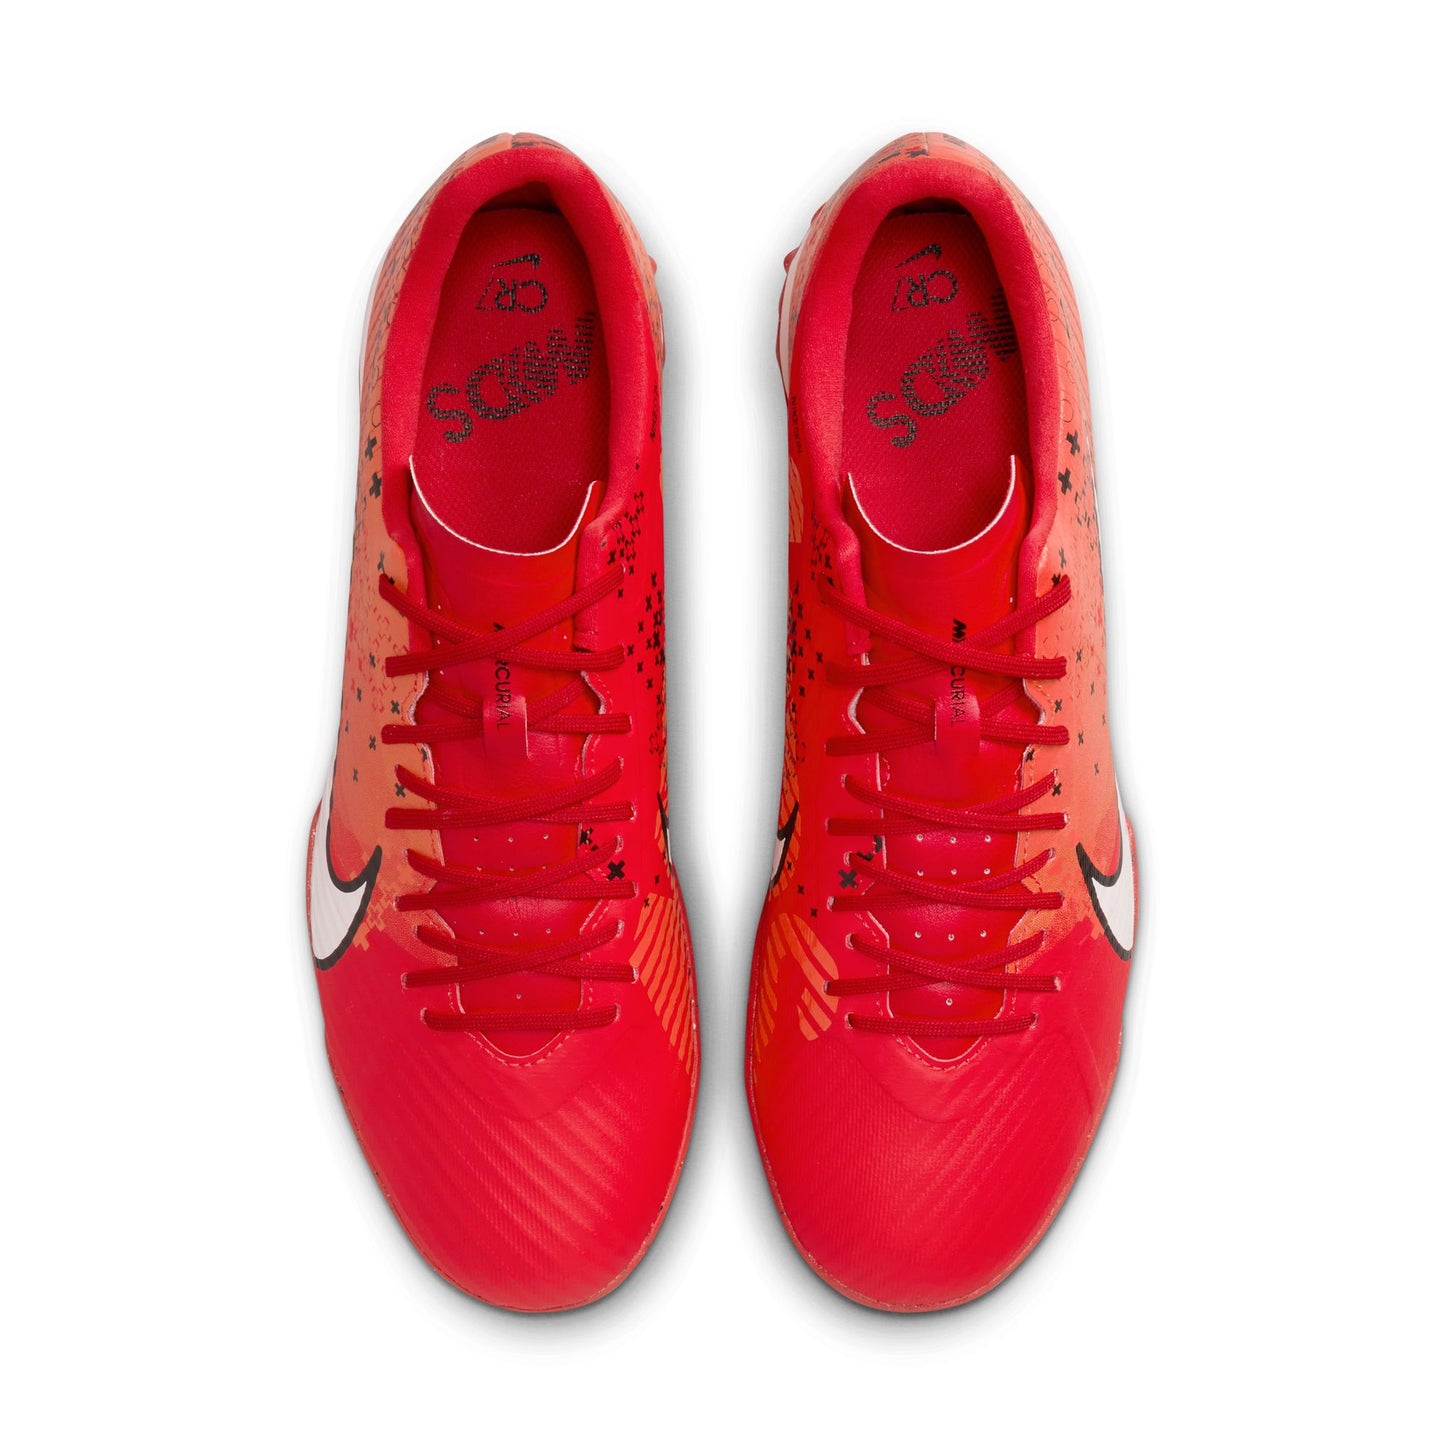 נעלי קטרגל לגברים Vapor 15 Academy Mercurial Dream Speed בצבע כתום ואדום